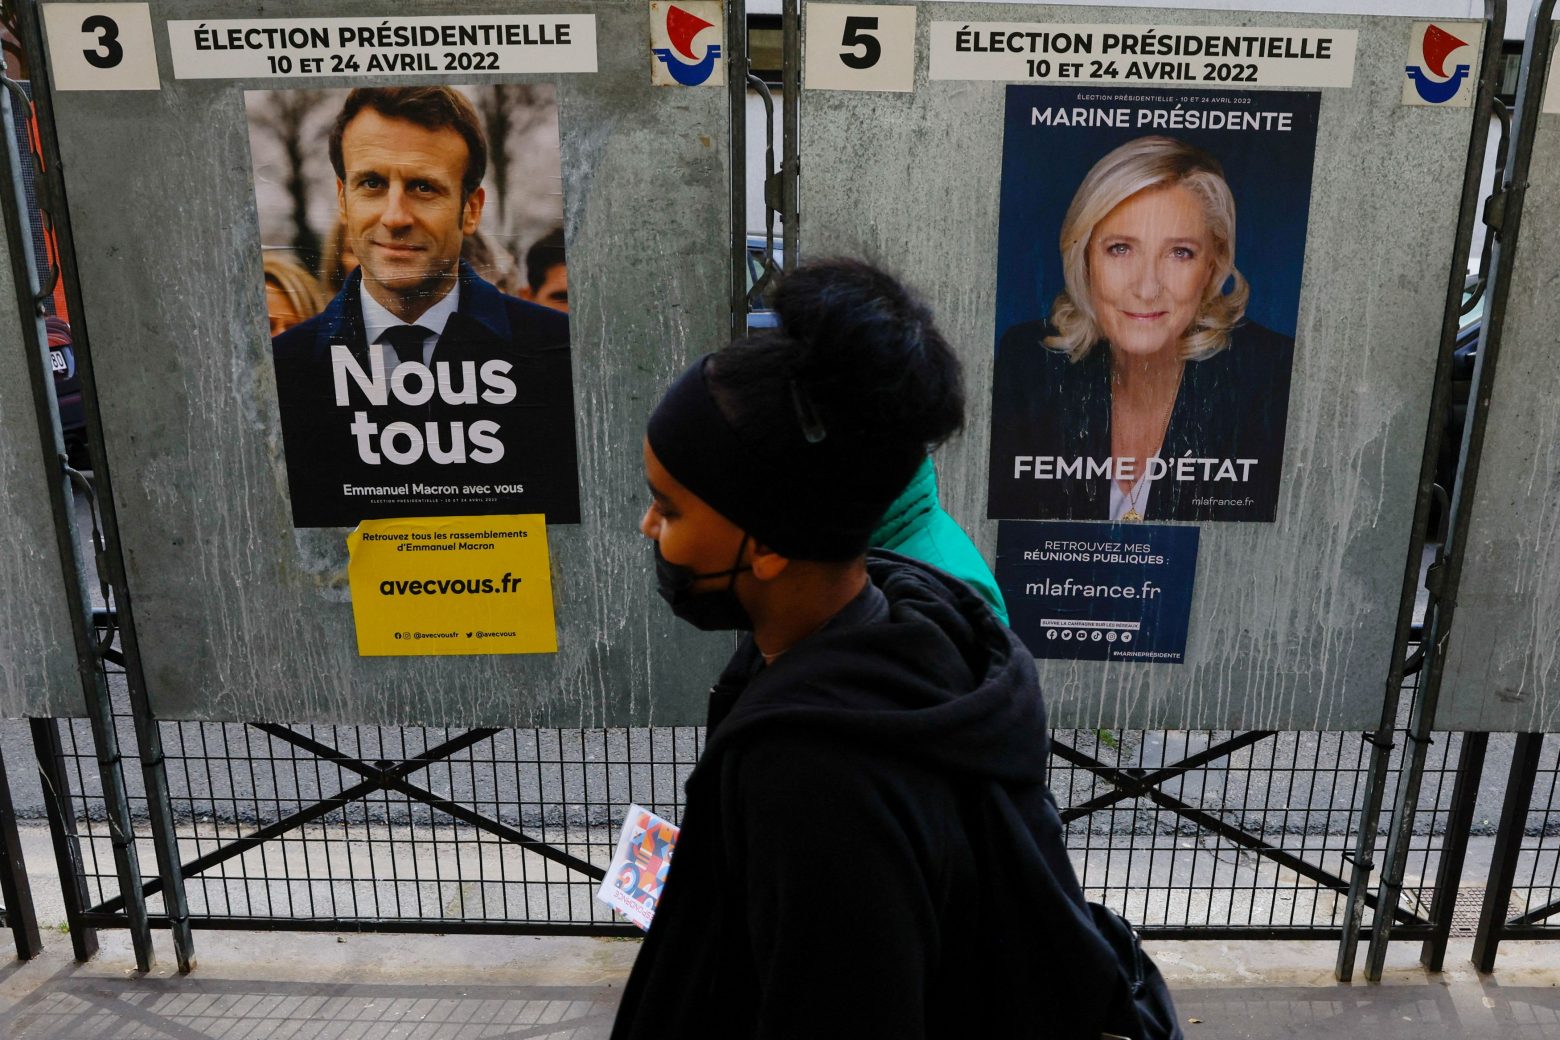 Γαλλικές εκλογές: Κρίσιμο debate λίγο πριν τις κάλπες – Τίποτα δεν έχει κριθεί